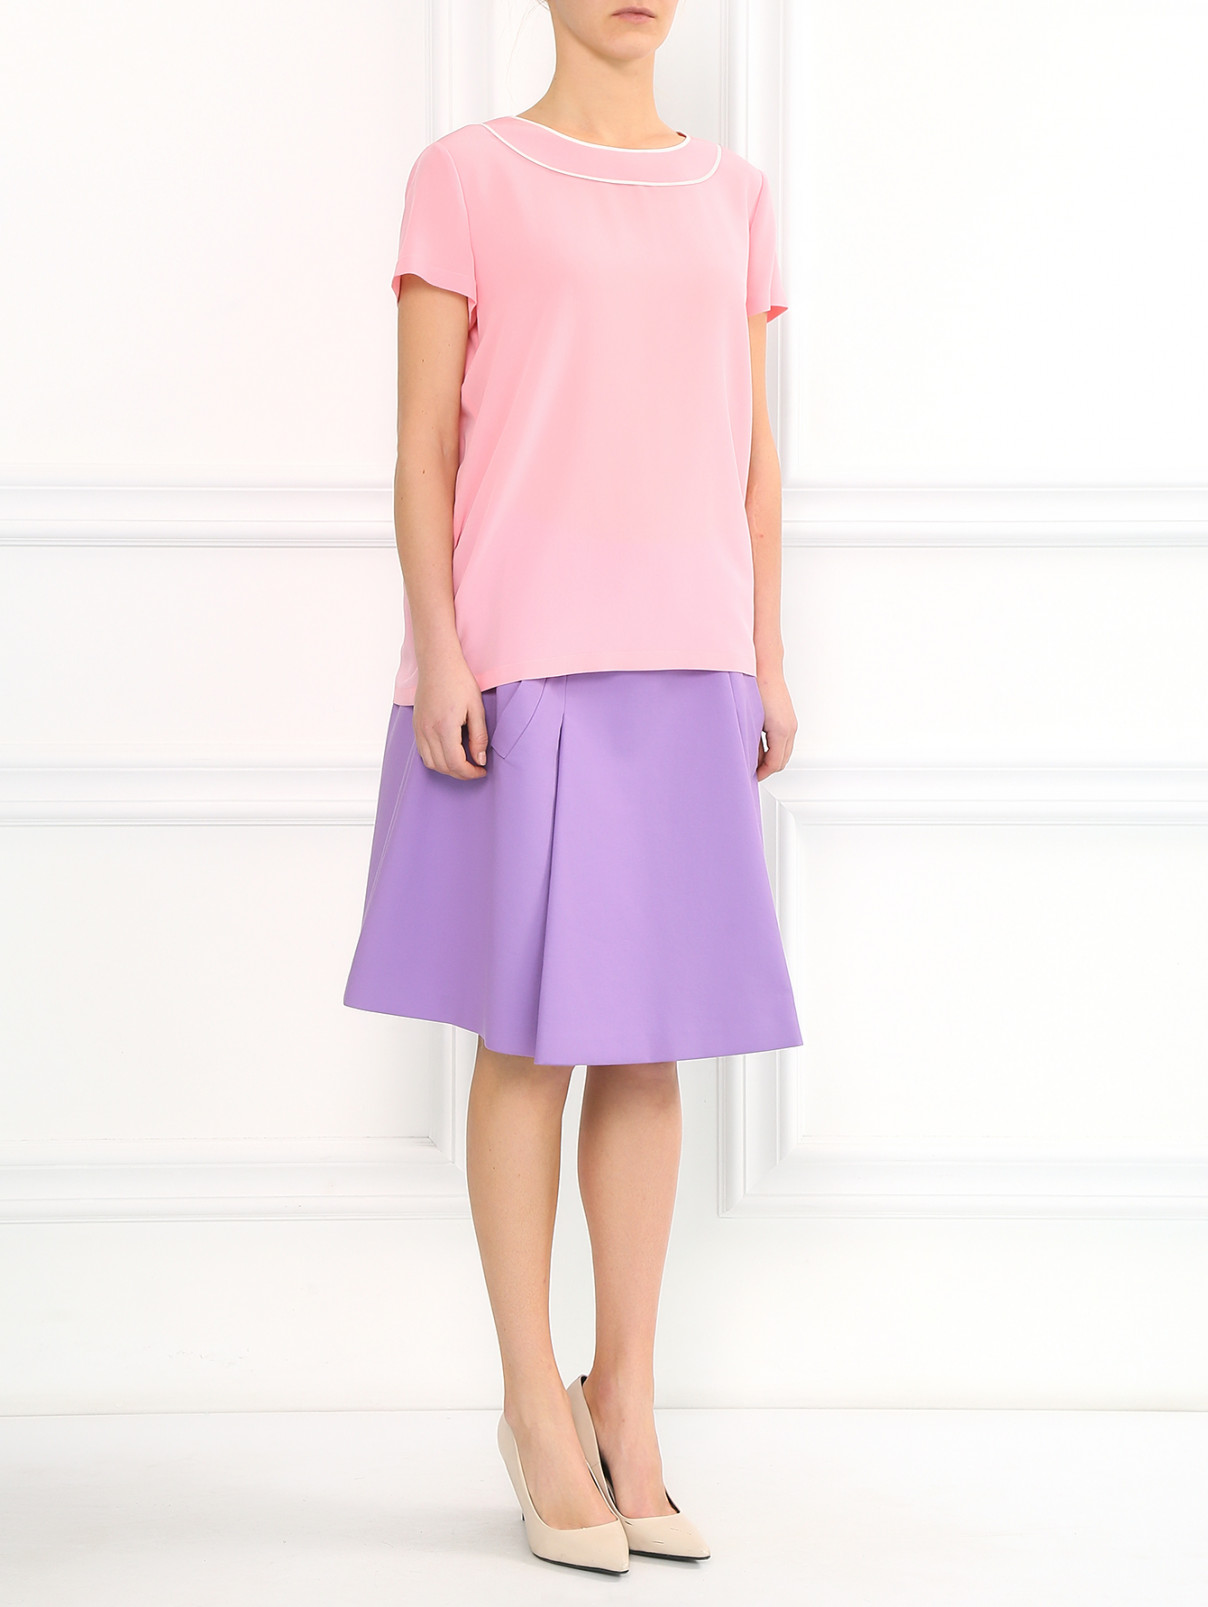 Шелковая блуза на молнии Moschino Boutique  –  Модель Общий вид  – Цвет:  Розовый